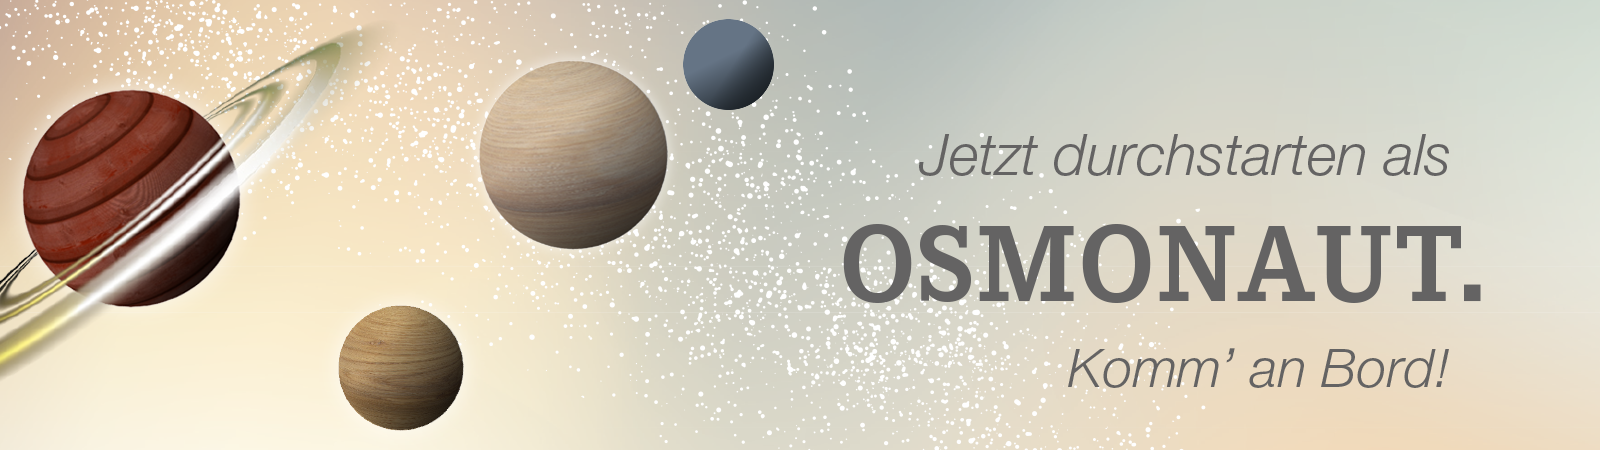 Werde jetzt Osmonaut bei Osmo und gestalte dir deine Zukunft als Lacklaborant w/m/d